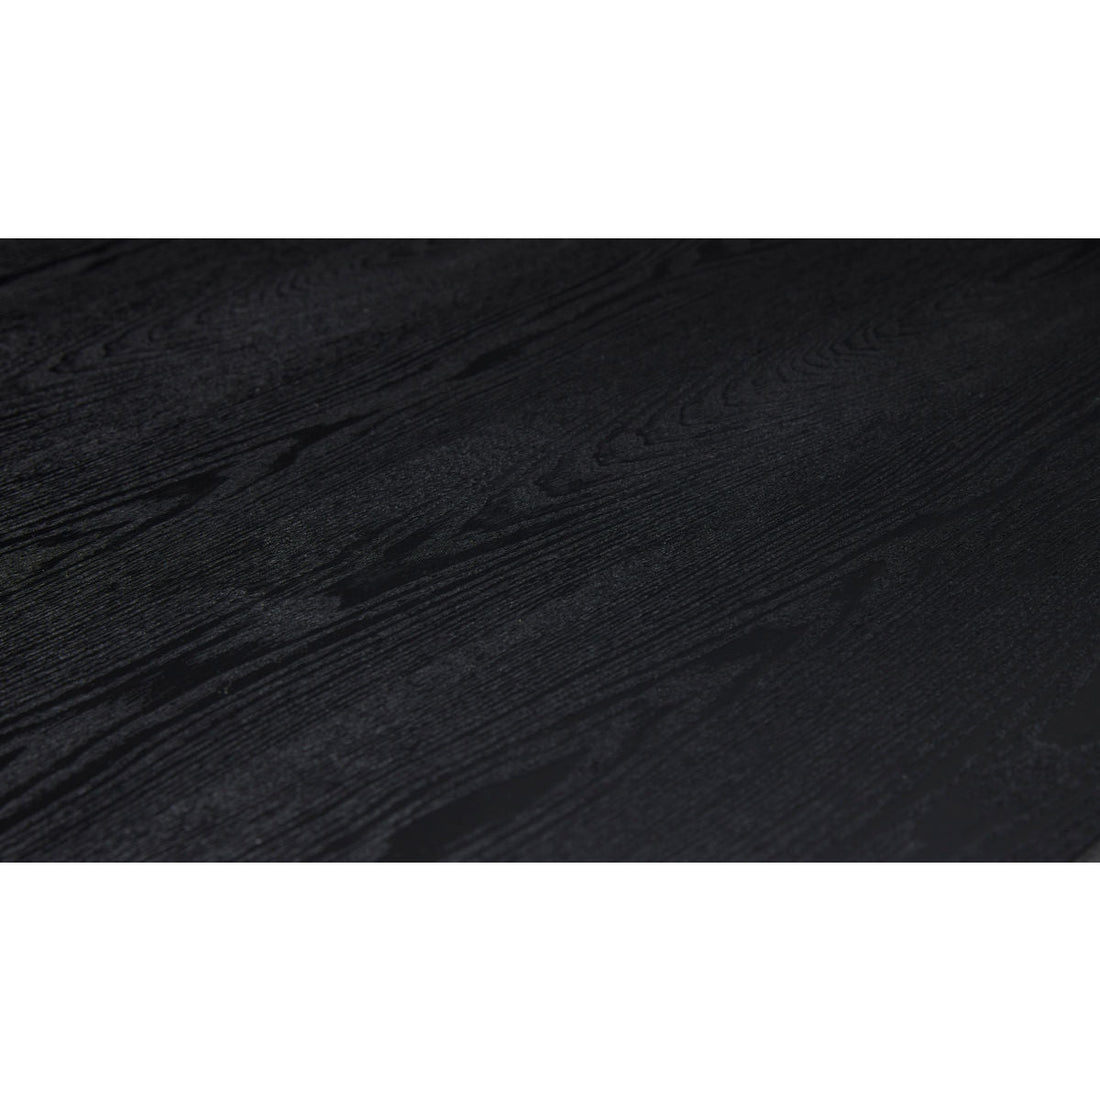 Hübsch Dipper spisebord firkantet svart